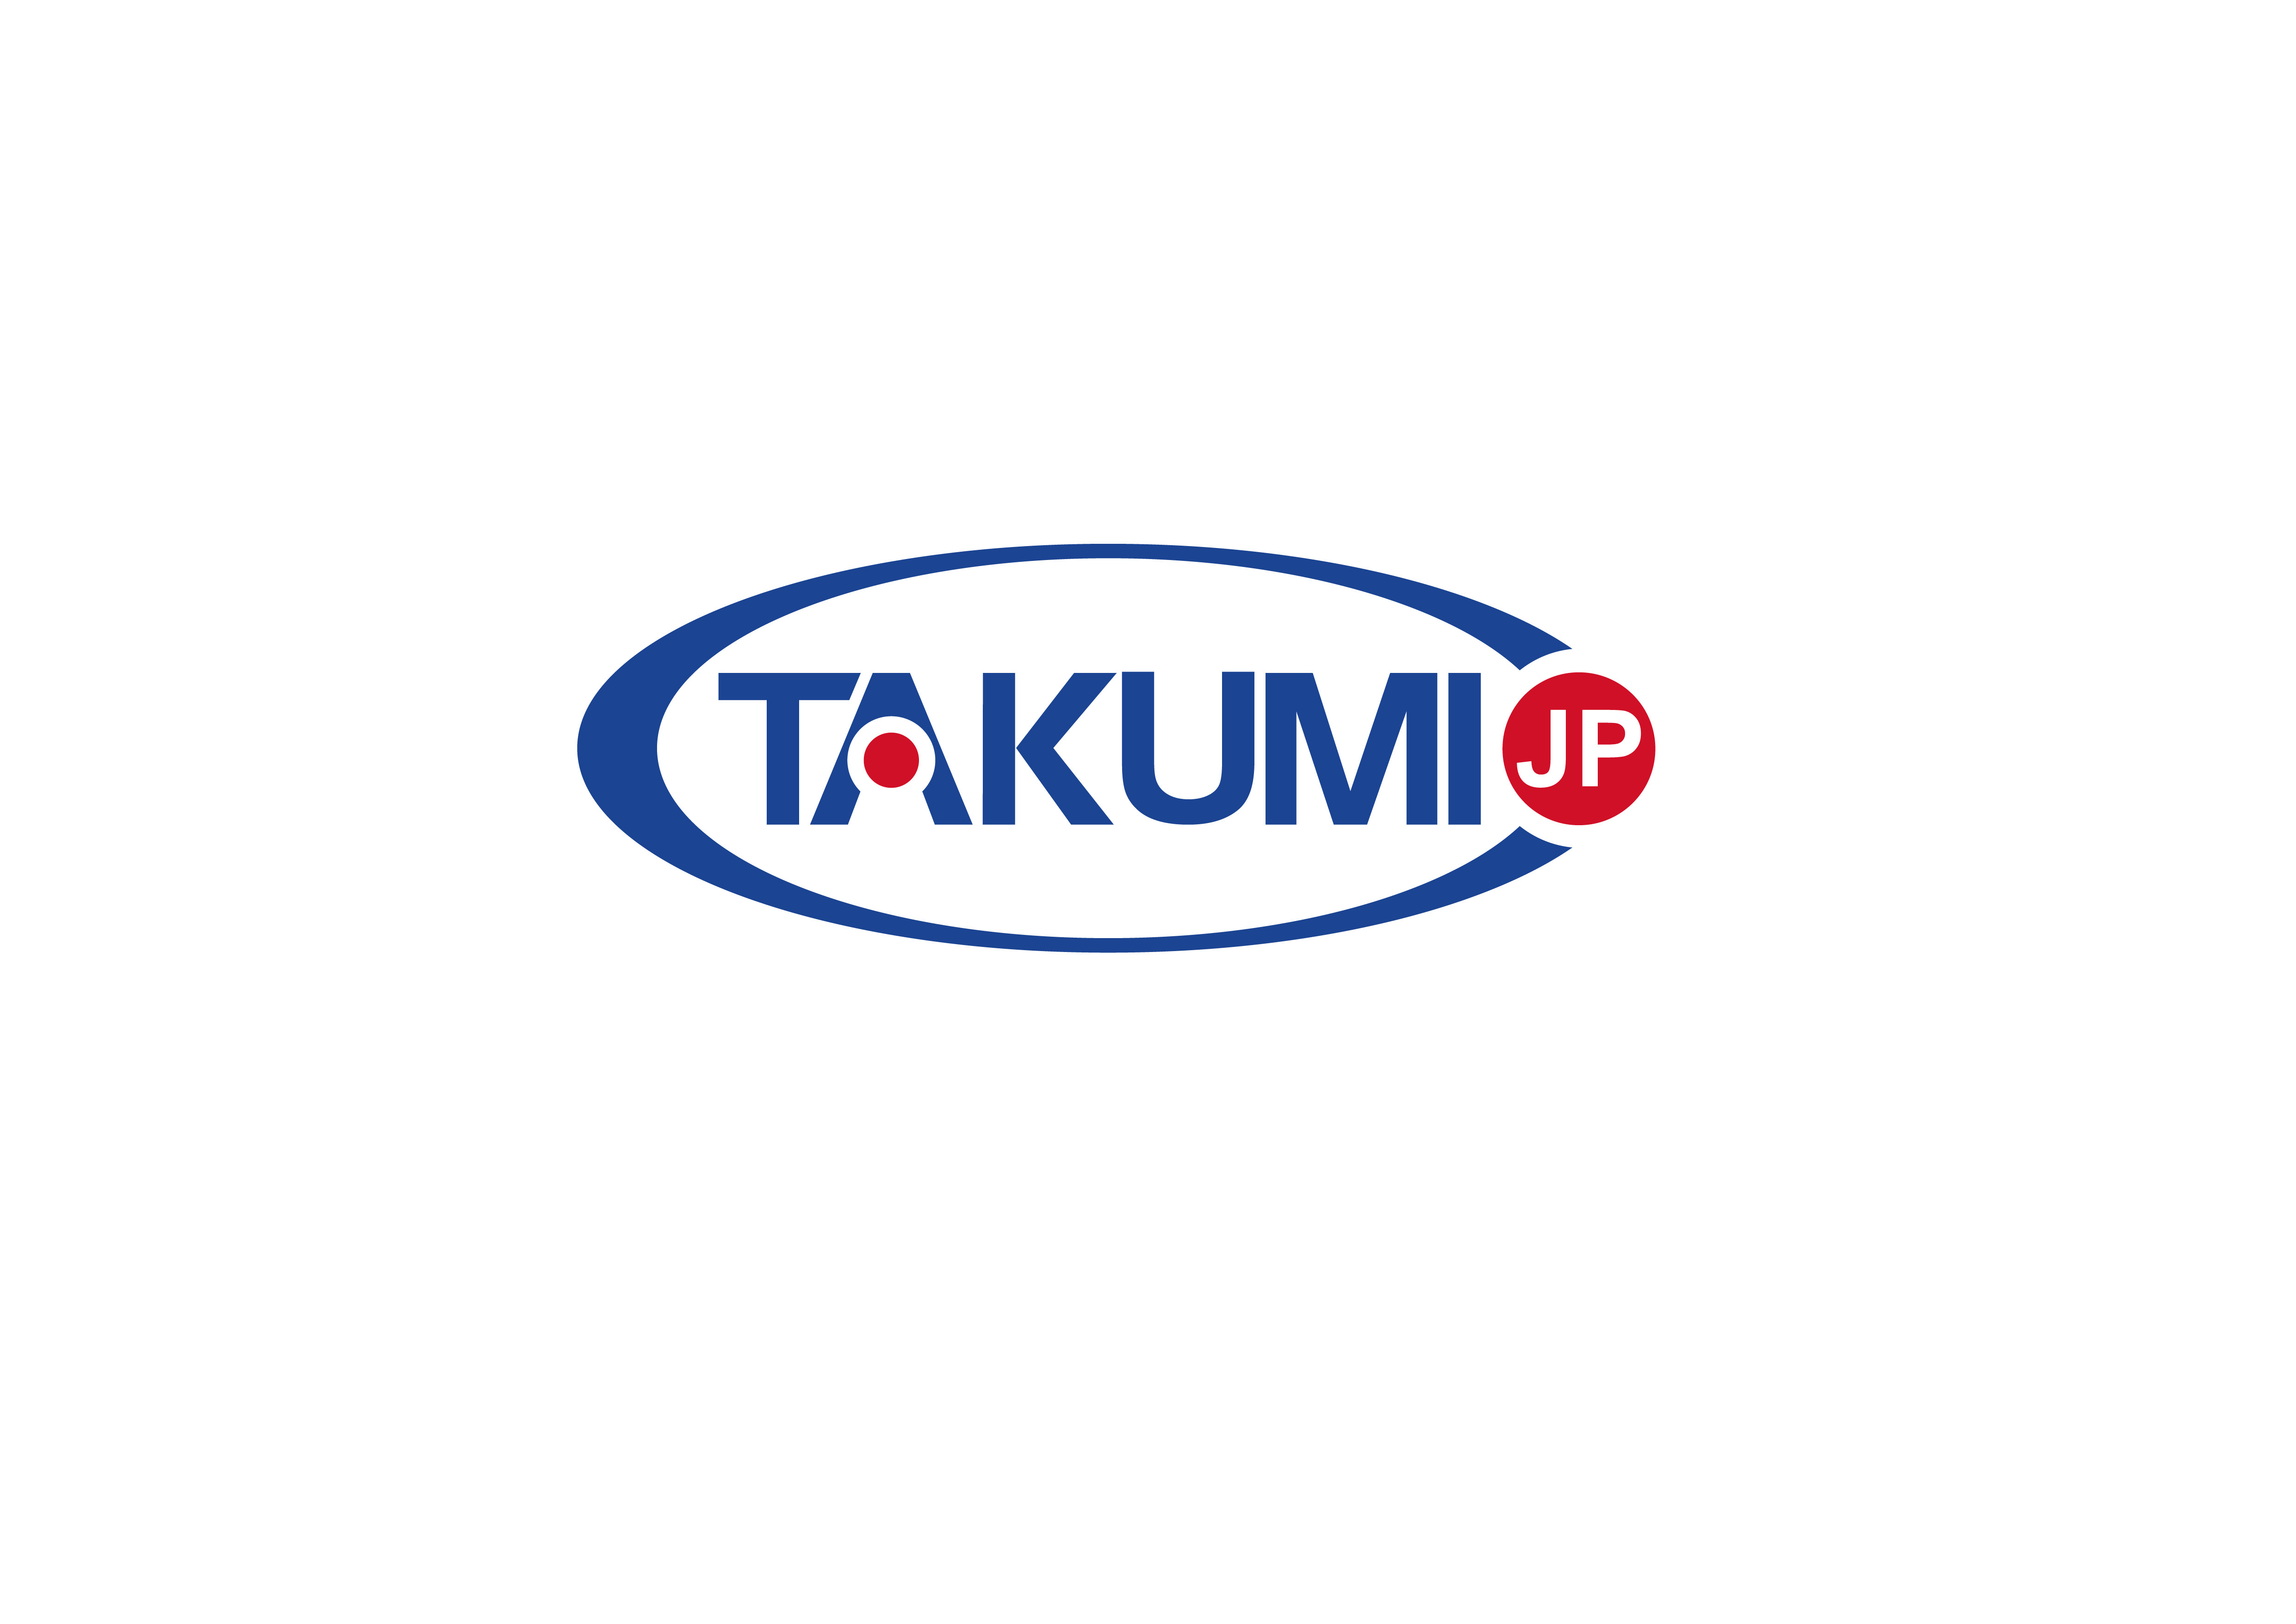 najnowsza sprawa firmy na temat Takumi szuka teraz wyłącznego dystrybutora na całym świecie.